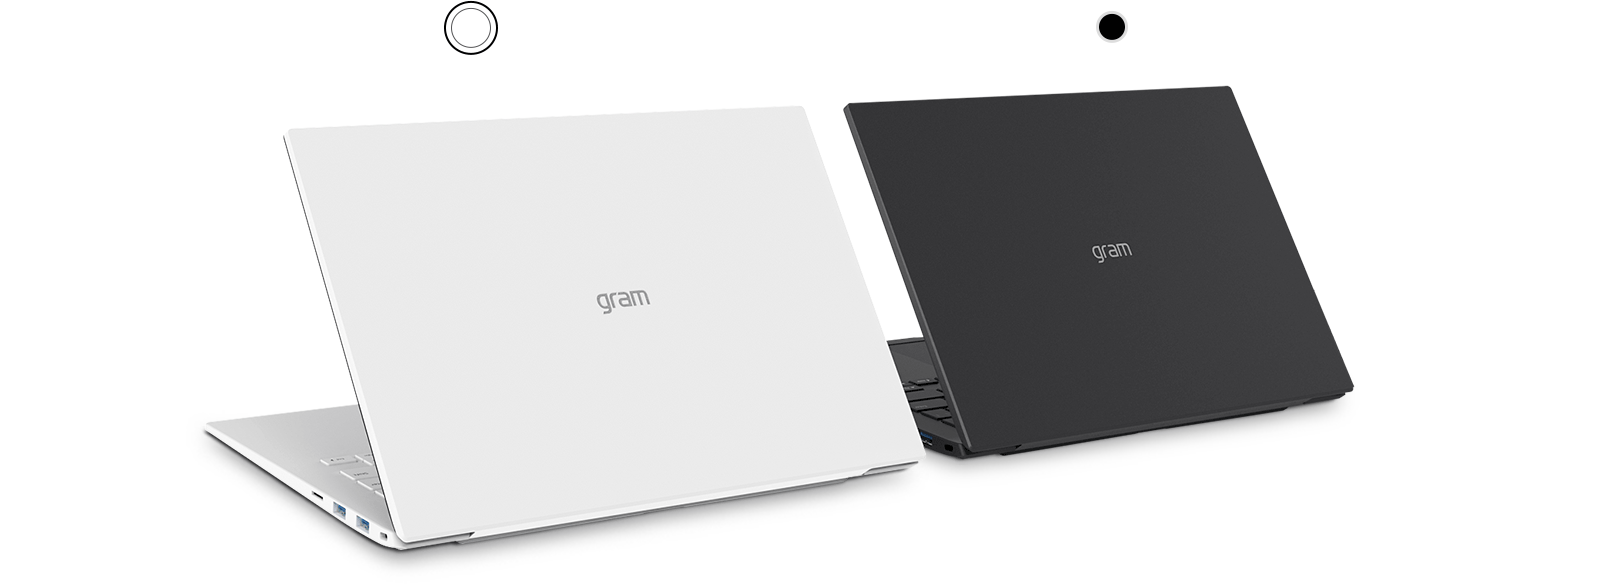 LG ノートパソコン gram 14Z90N-VR31J